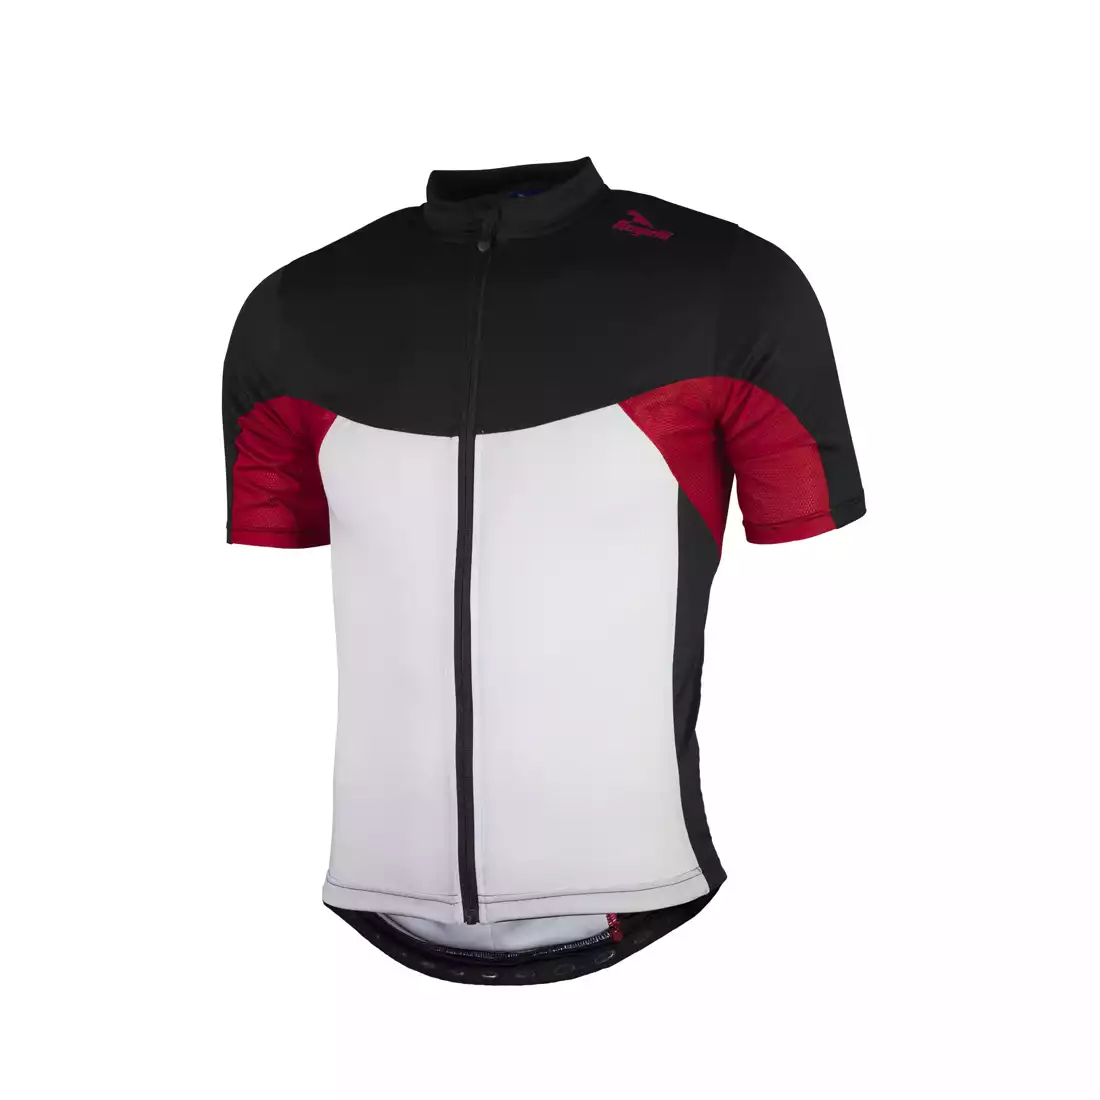 ROGELLI BIKE RECCO 2.0 męska koszulka rowerowa, 001.137 - biało-czarno-czerwona 